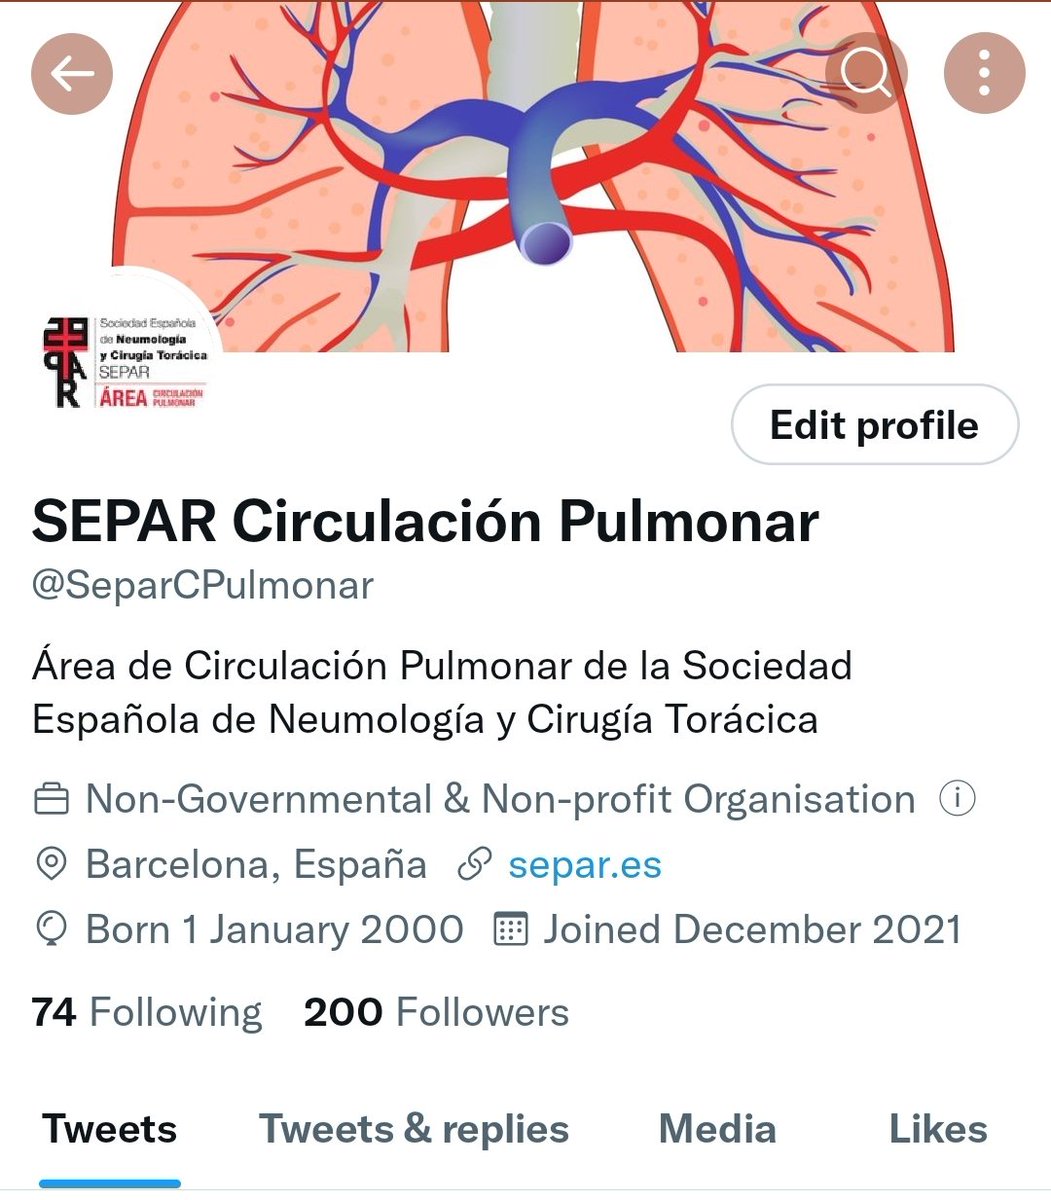 ¡200 gracias por seguirnos en estos primeros 8 meses de vida en Twitter! Seguimos con ilusión a trabajar en el Área de Circulación Pulmonar de @SeparRespira